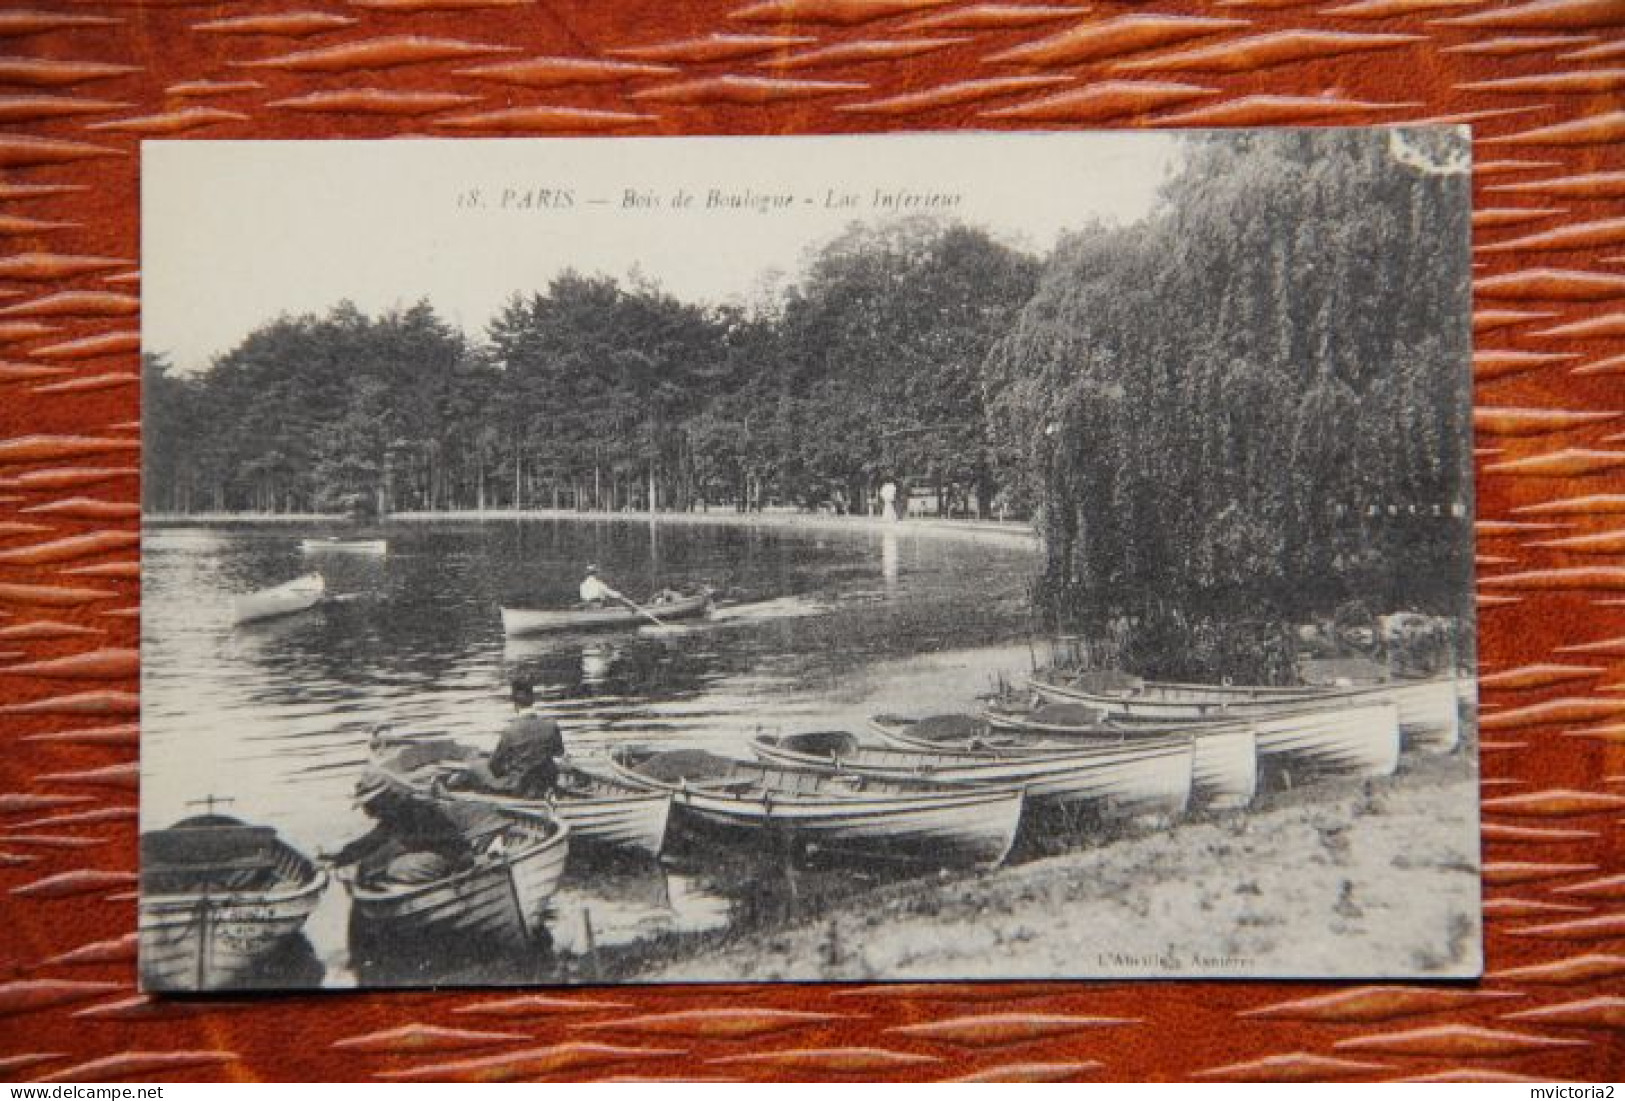 75 - PARIS : Bois De BOULOGNE, Lac Inférieur - Parques, Jardines